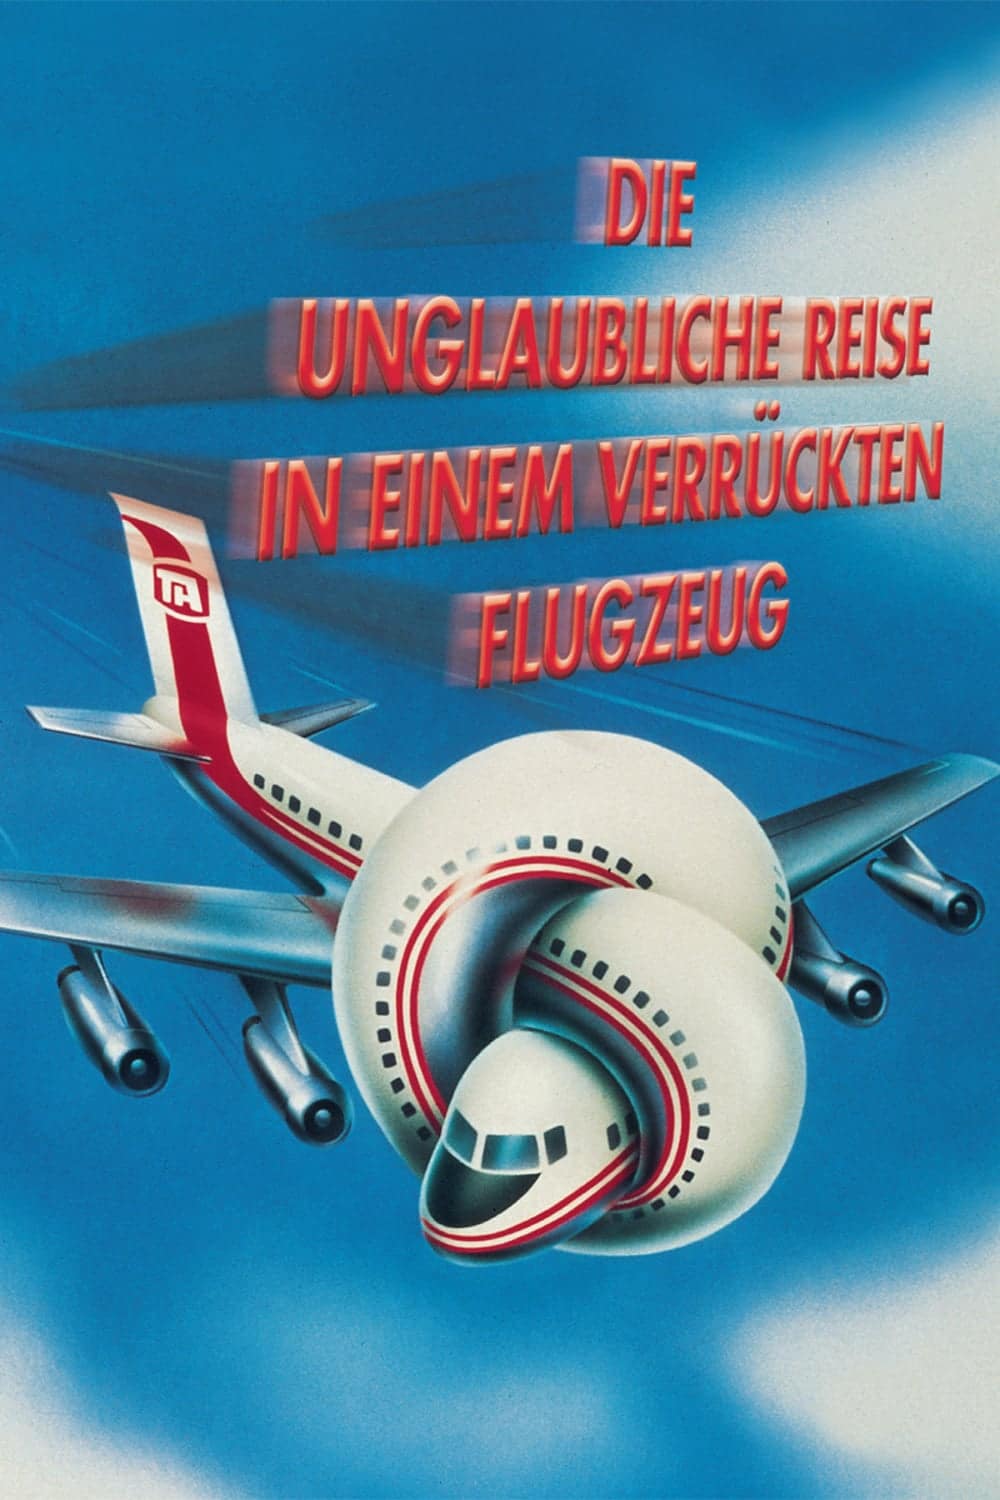 Plakat von "Die unglaubliche Reise in einem verrückten Flugzeug"